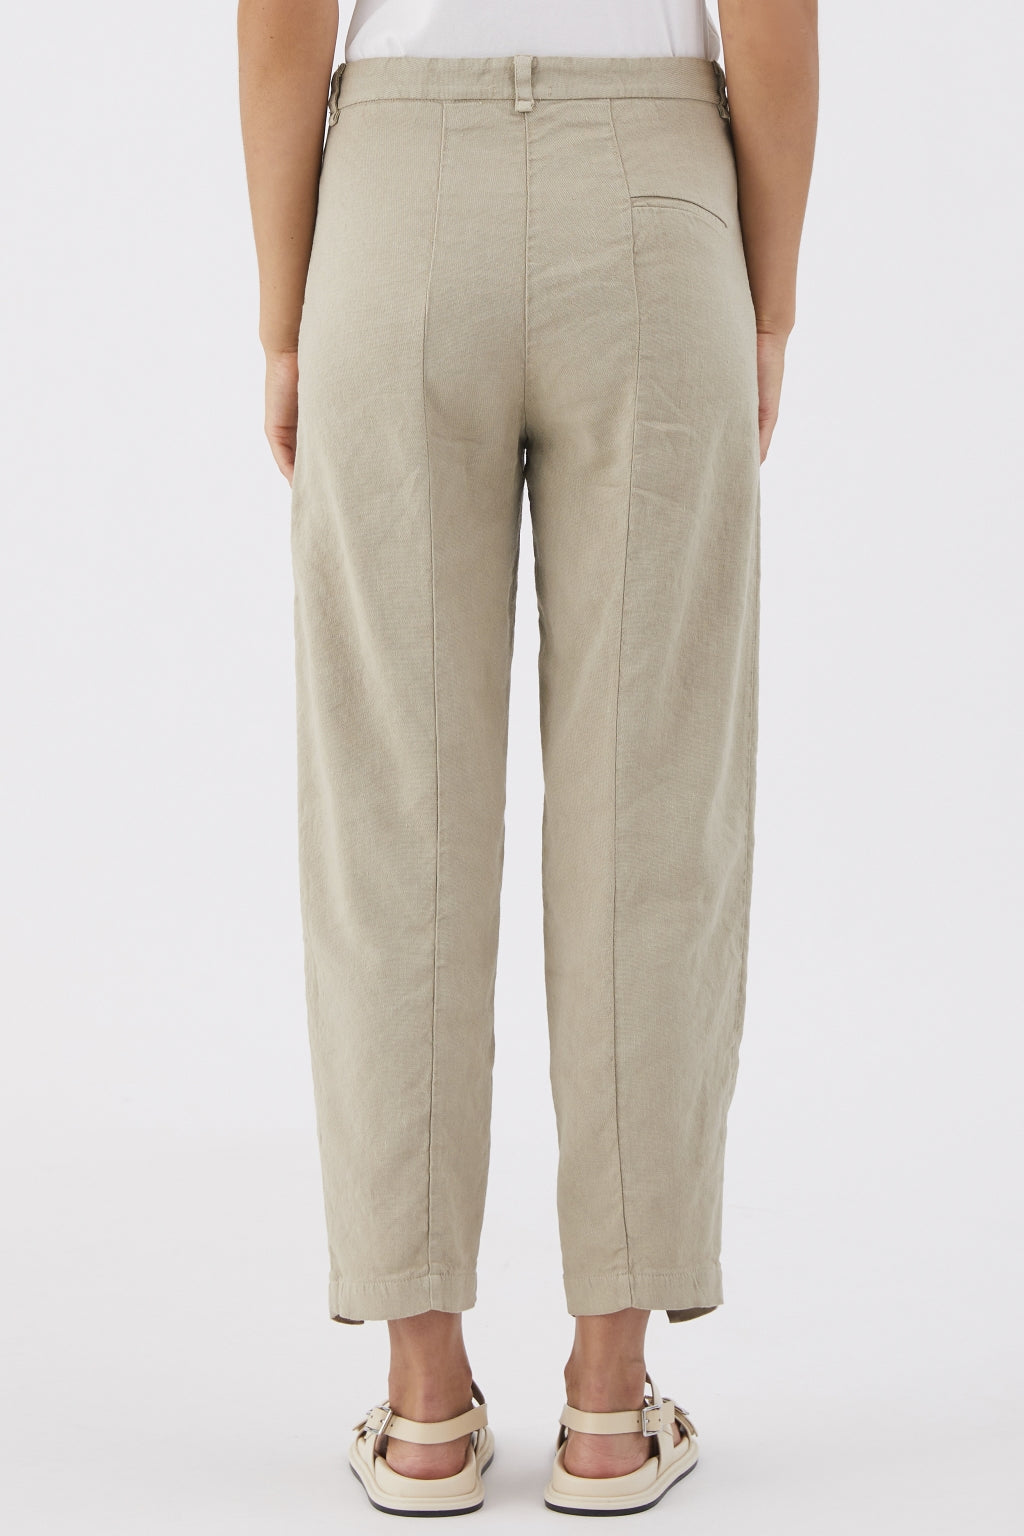 Cfdtrwf154 trousers - pearl grey TRANSIT